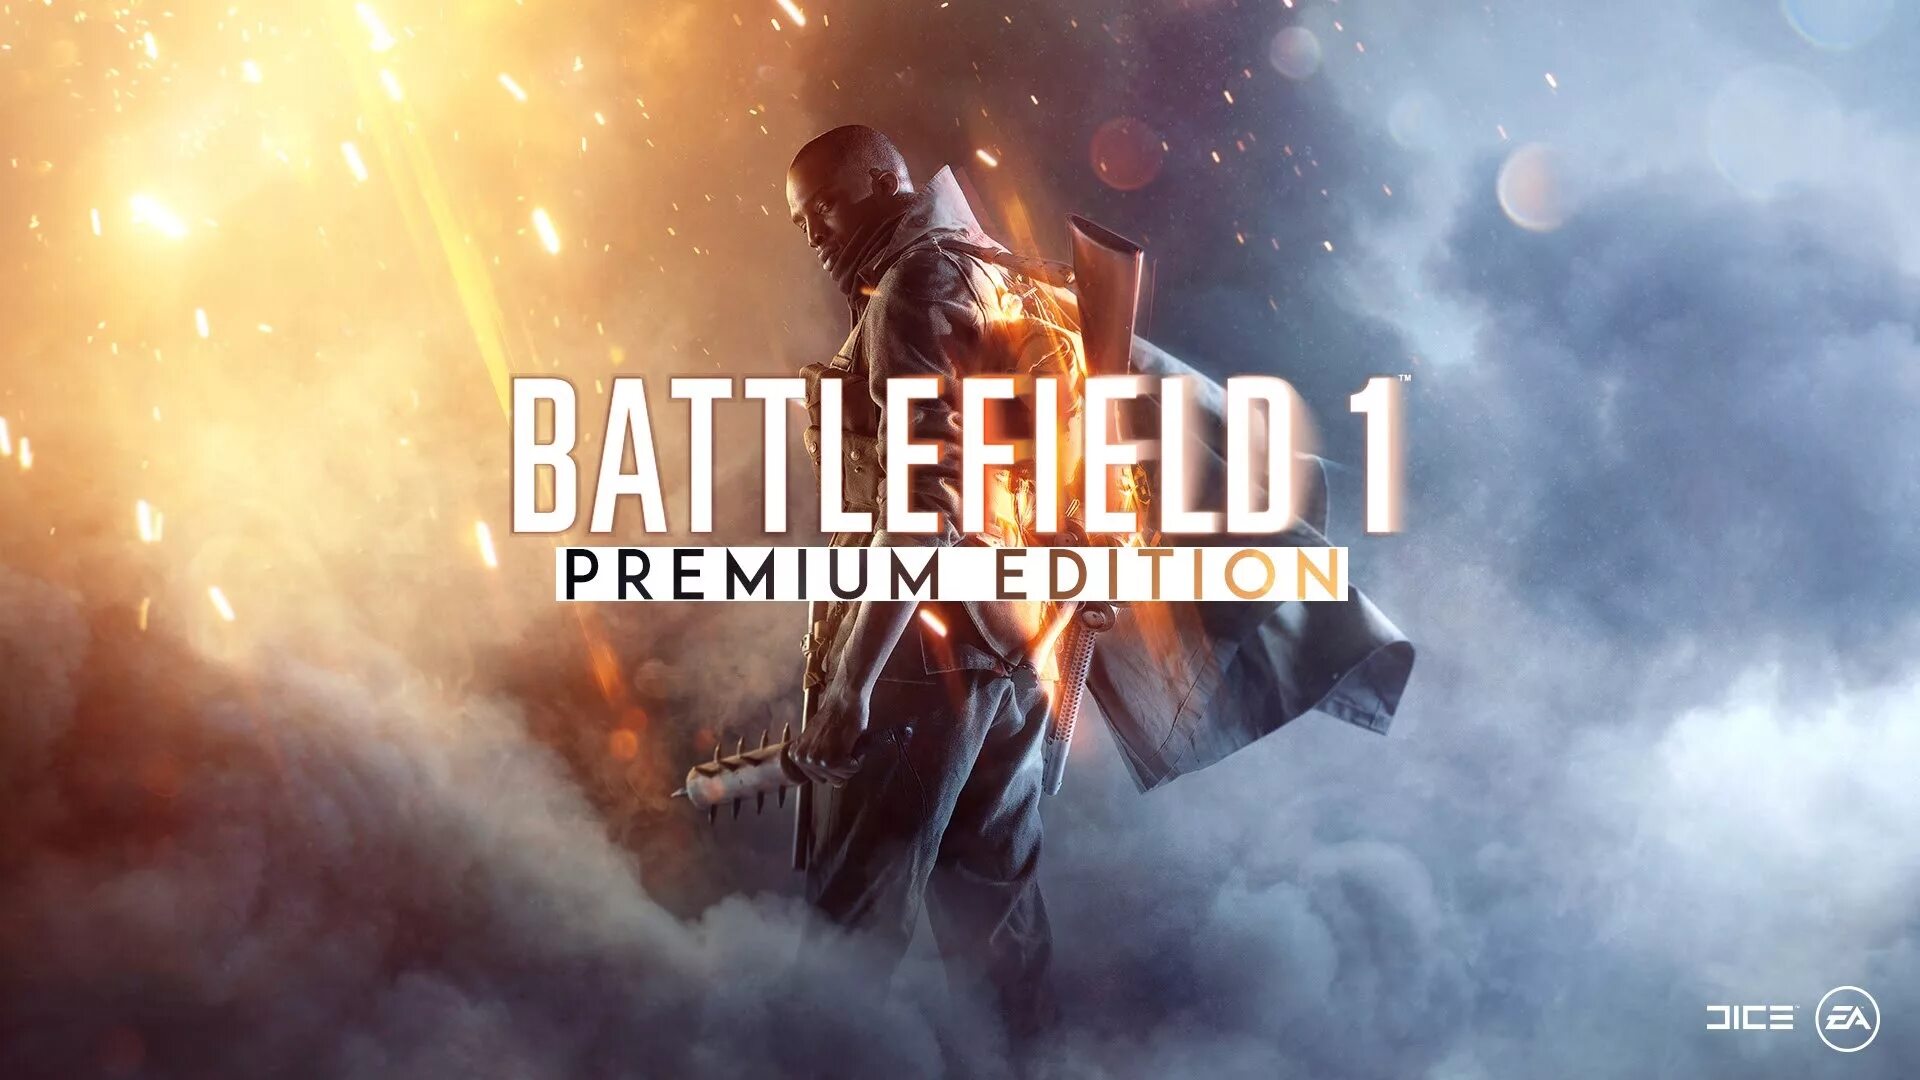 Battlefield soundtrack. Battlefield 1 обложка. Бателфилд 1 обложка игры. Бателфилд 1 премиум. Бателфилд 1 логотип.